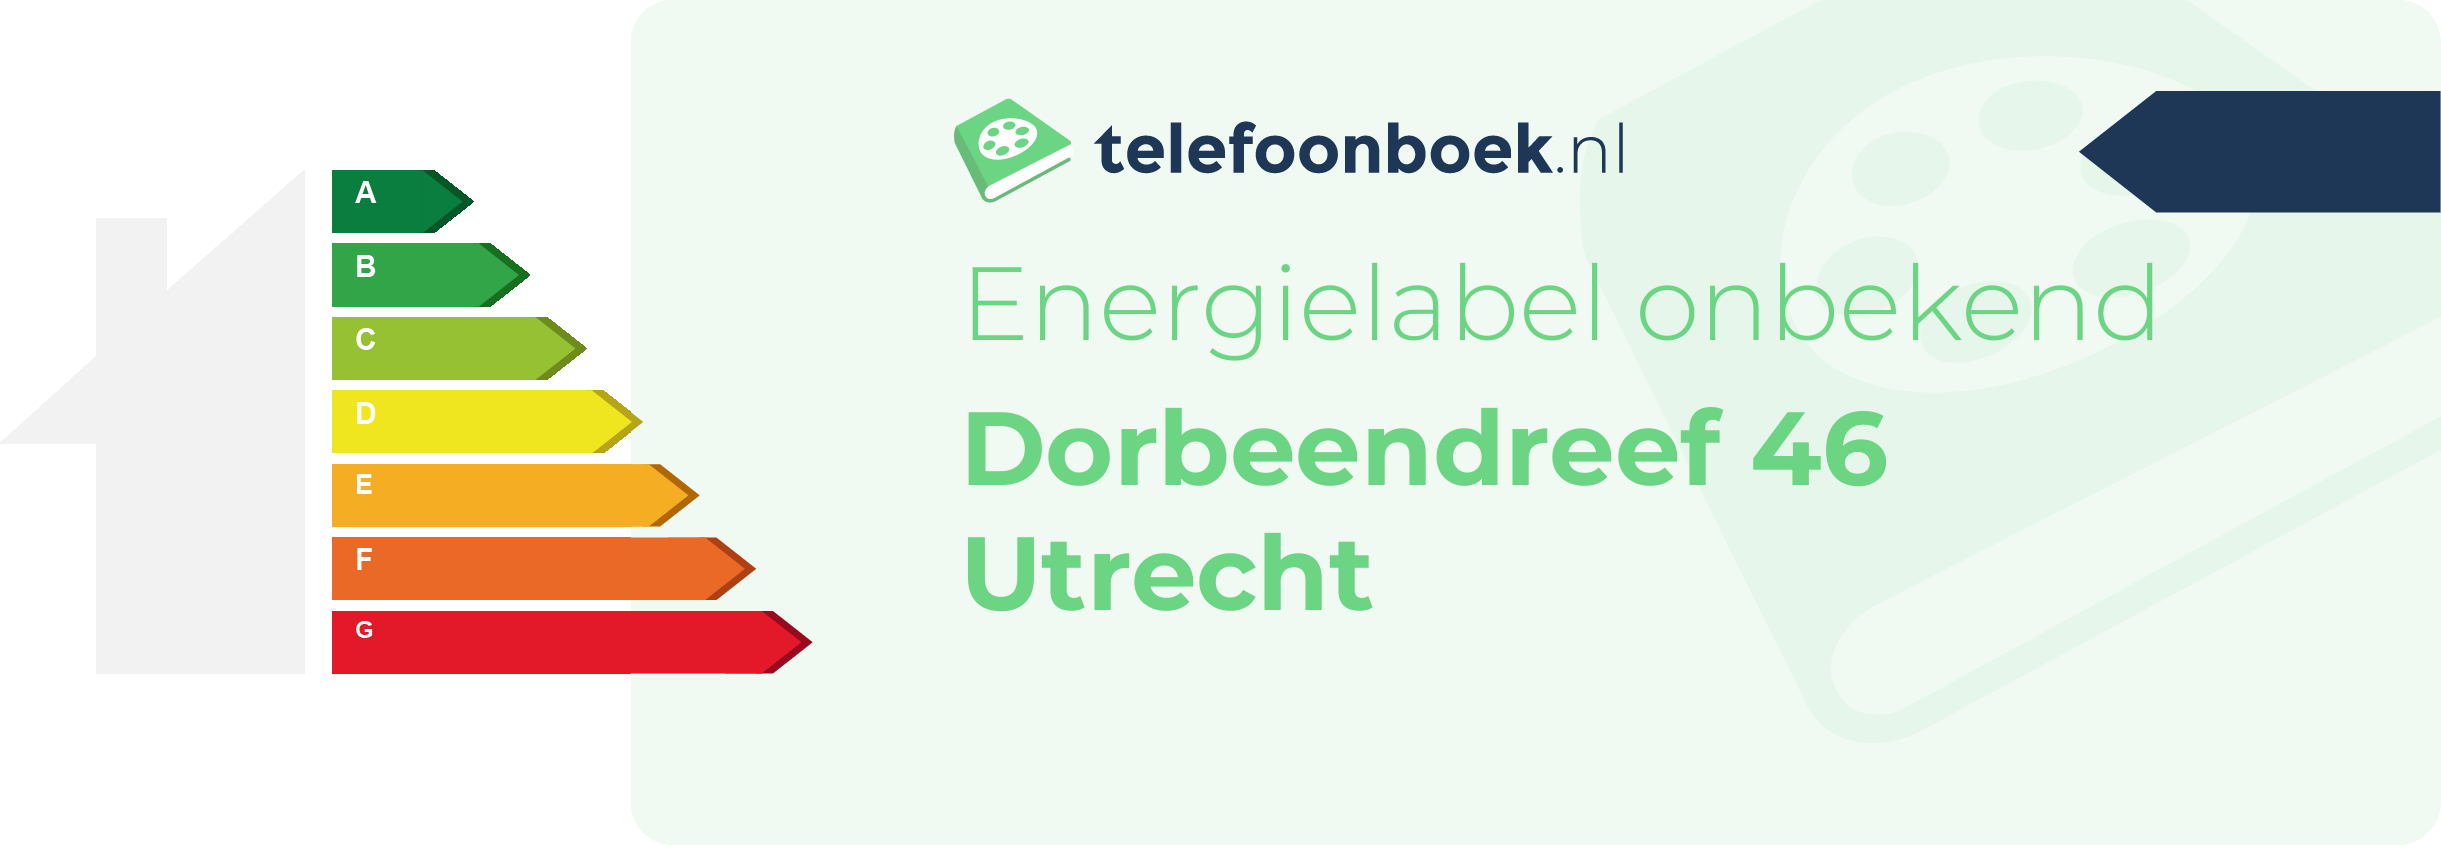 Energielabel Dorbeendreef 46 Utrecht